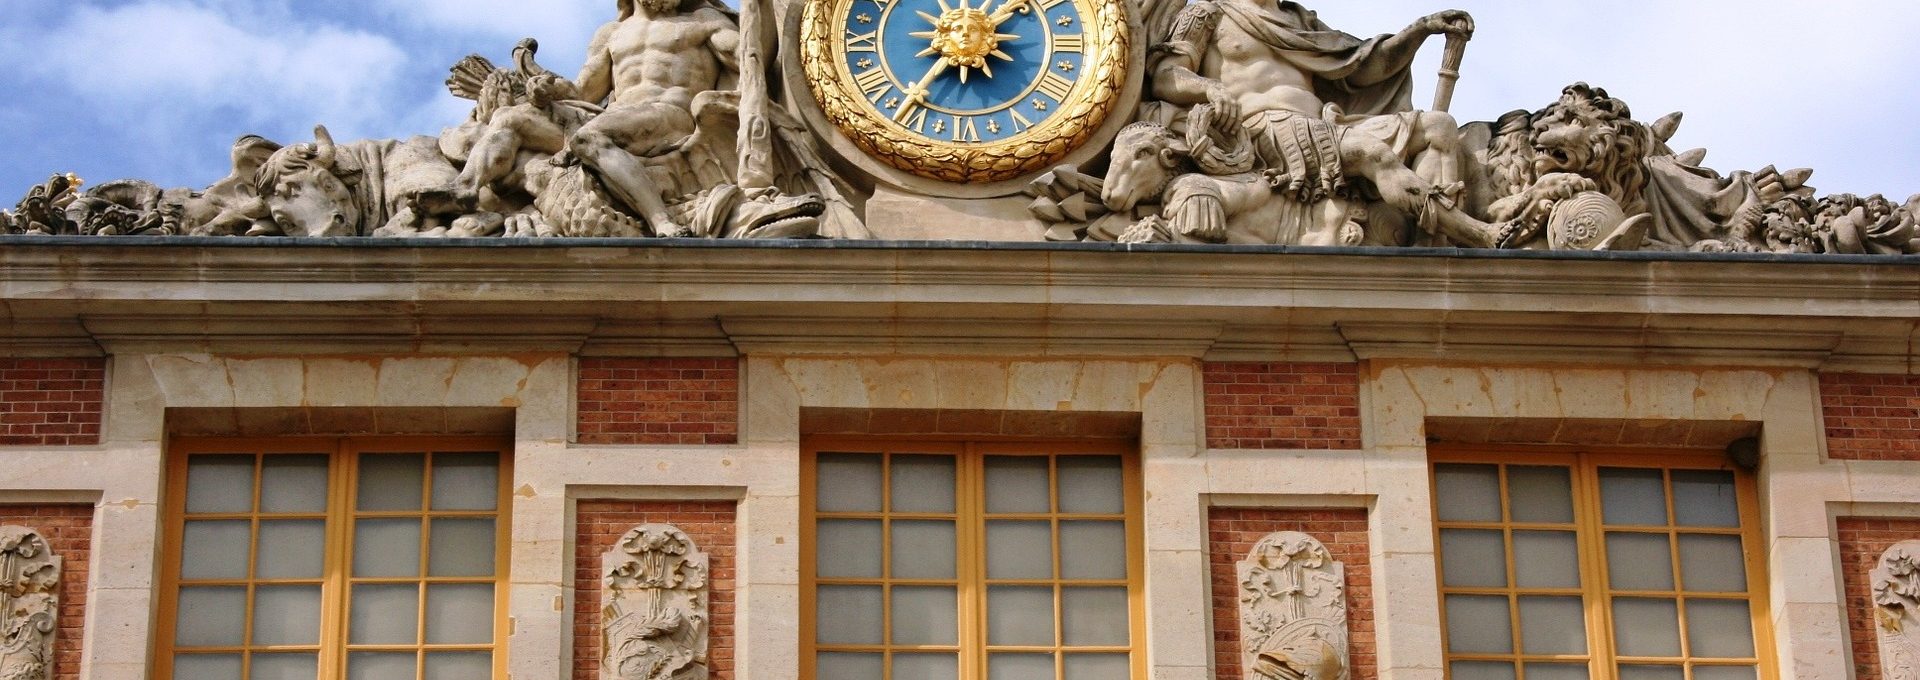 Relógio que fica na estrutura exterior do Palácio de Versalhes